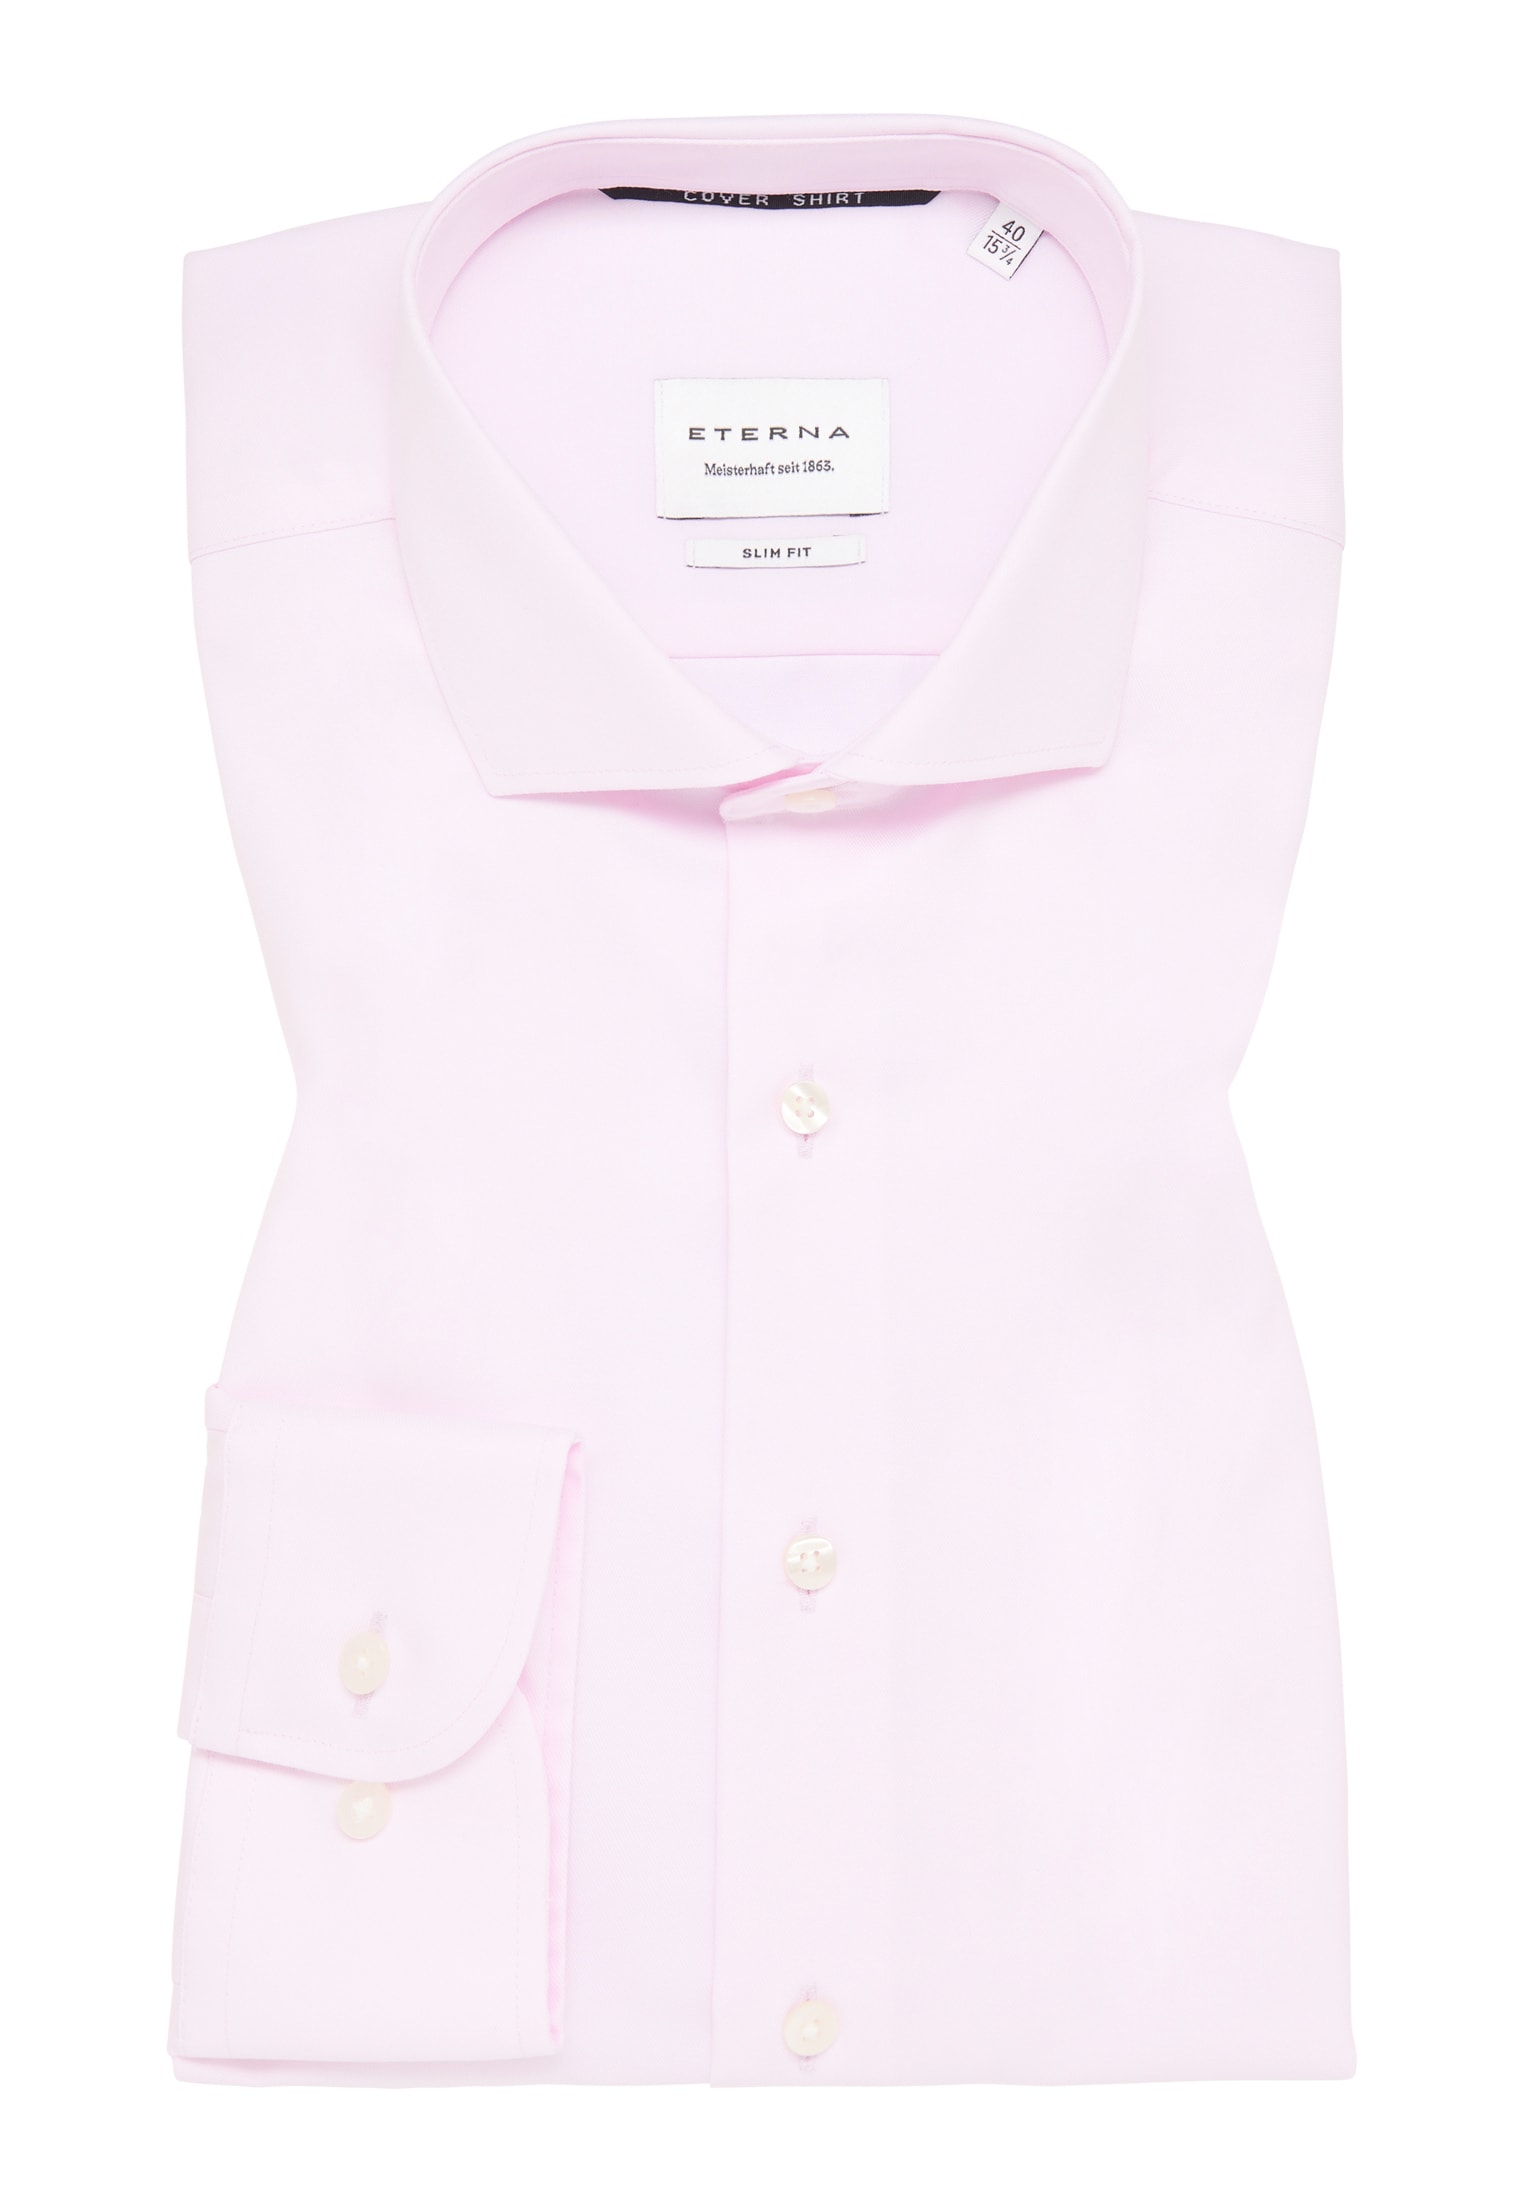 SLIM FIT | | | rosa | rosa 42 unifarben Langarm Cover in Shirt 1SH05518-15-11-42-1/1